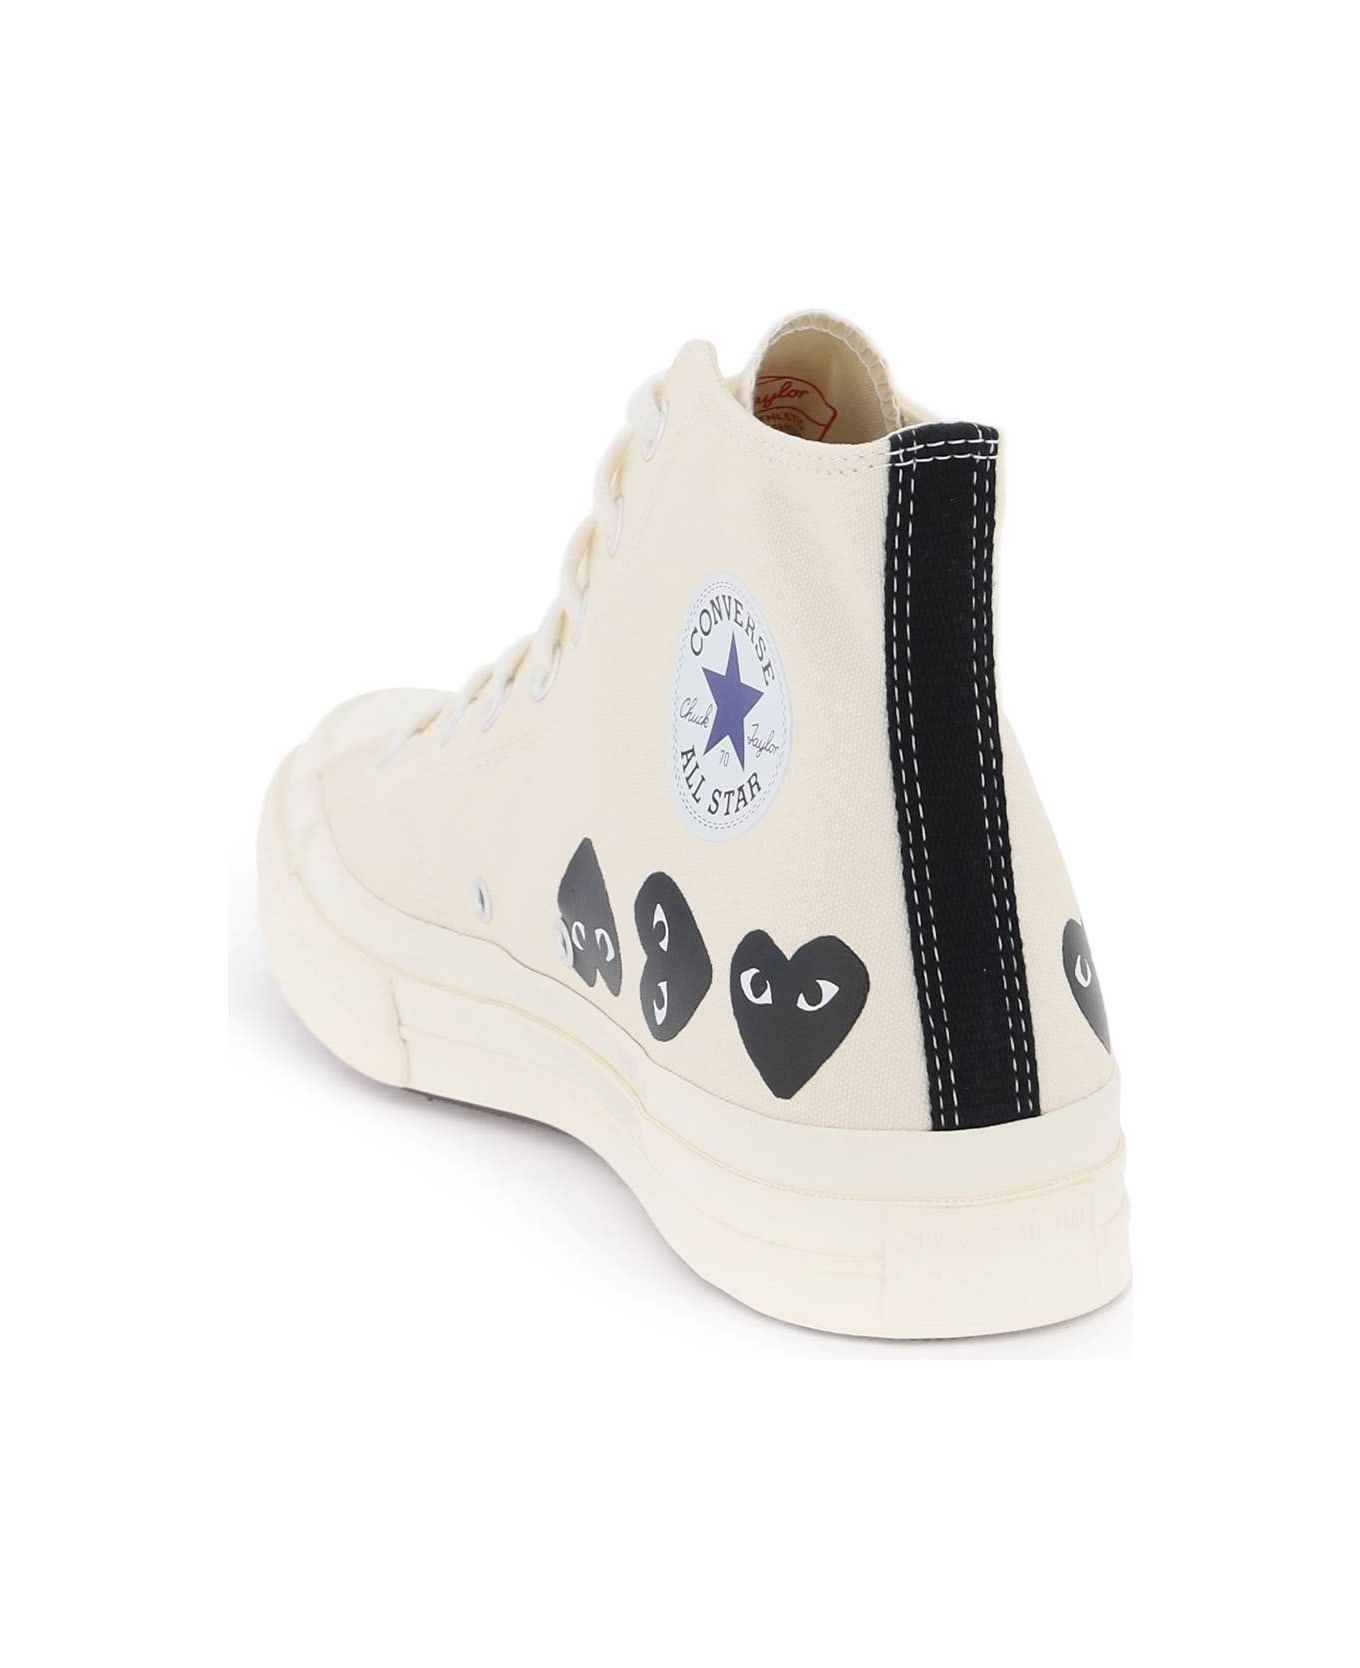 Comme des Garçons Shirt Boy Multi Heart Converse X Comme Des Gar S Play Hi-top Sneakers - White